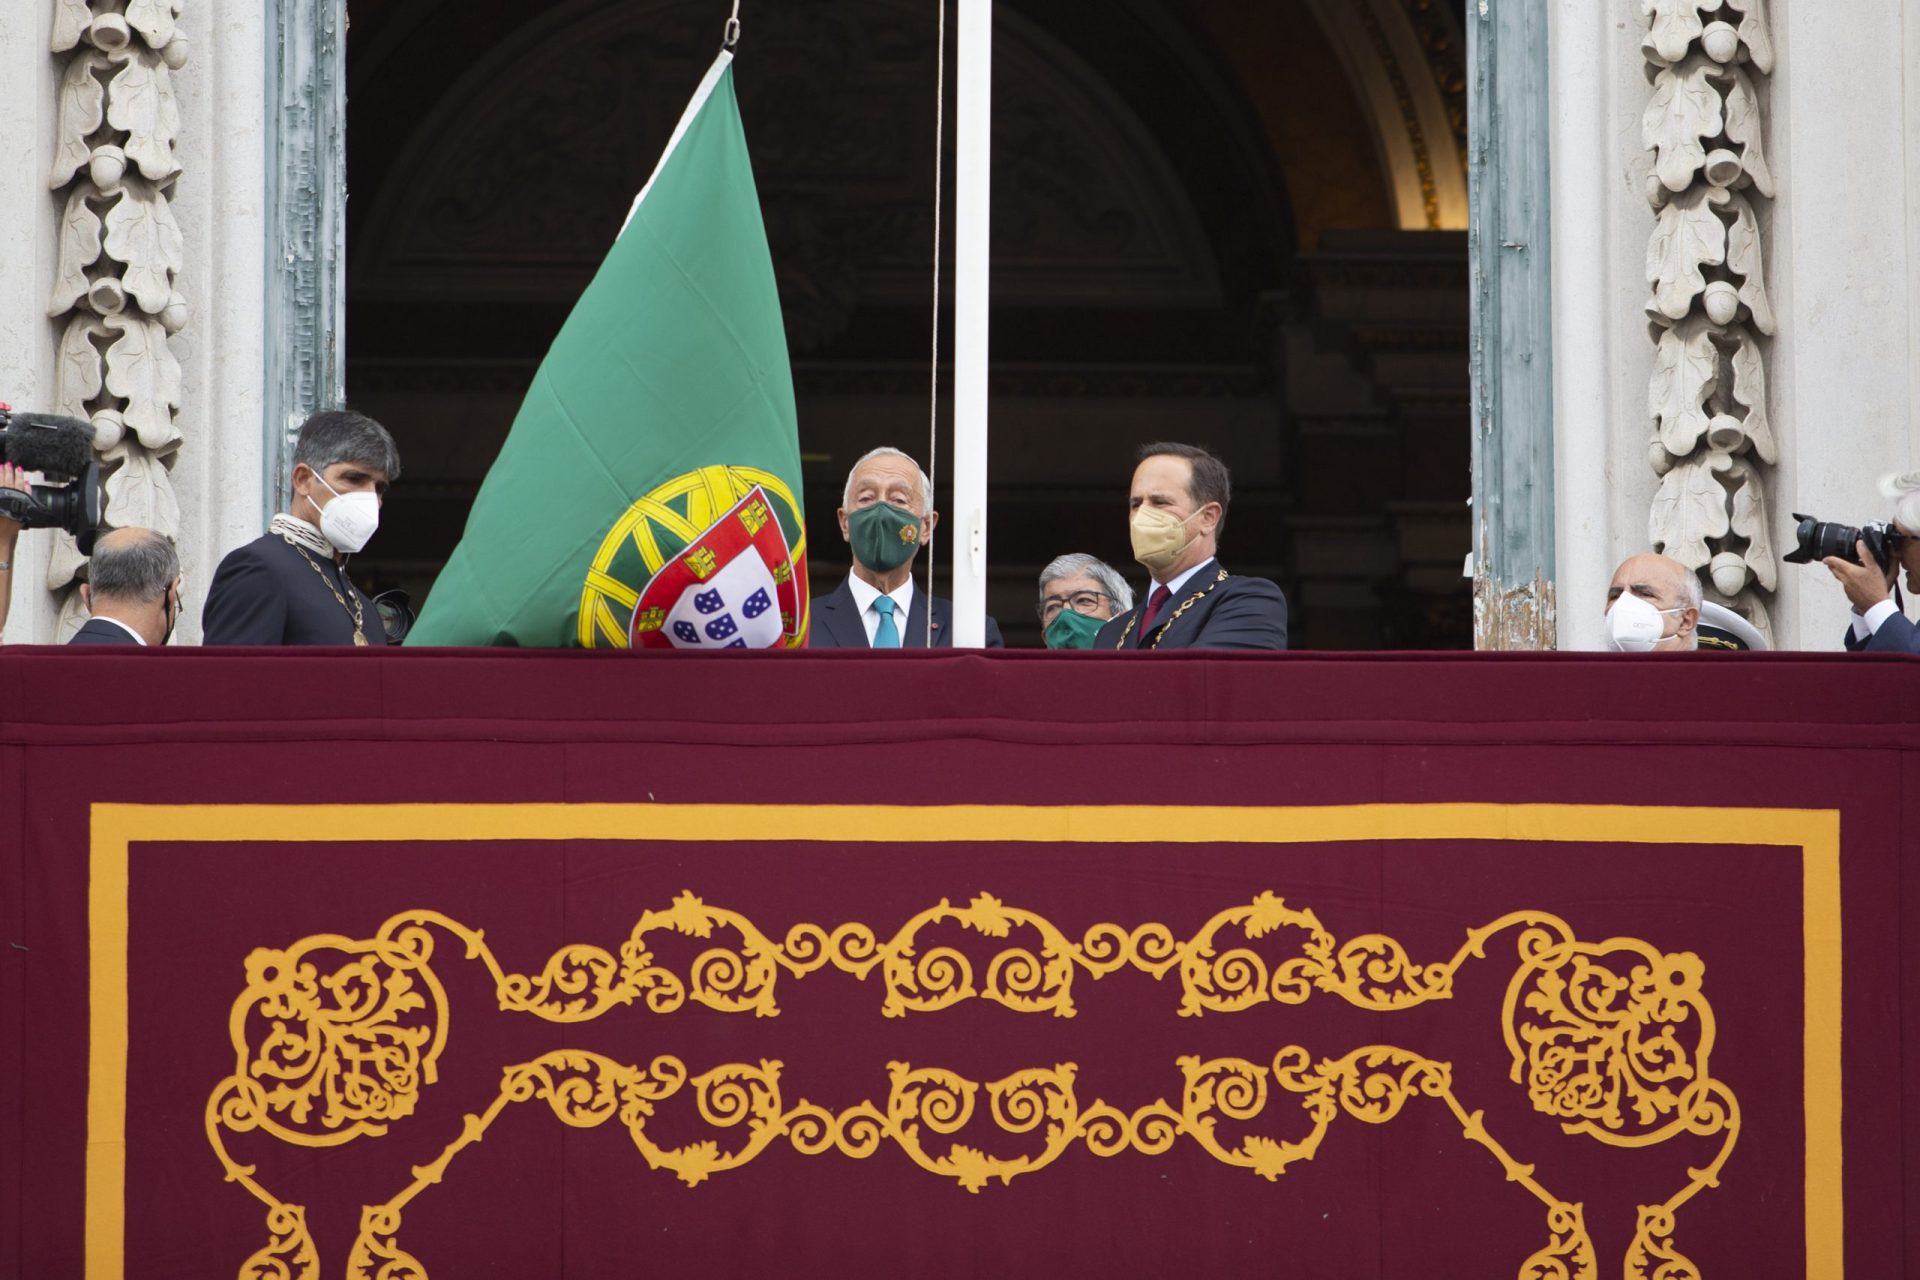 5 de Outubro. Marcelo pede um “Portugal mais inclusivo” para manter a “data viva”